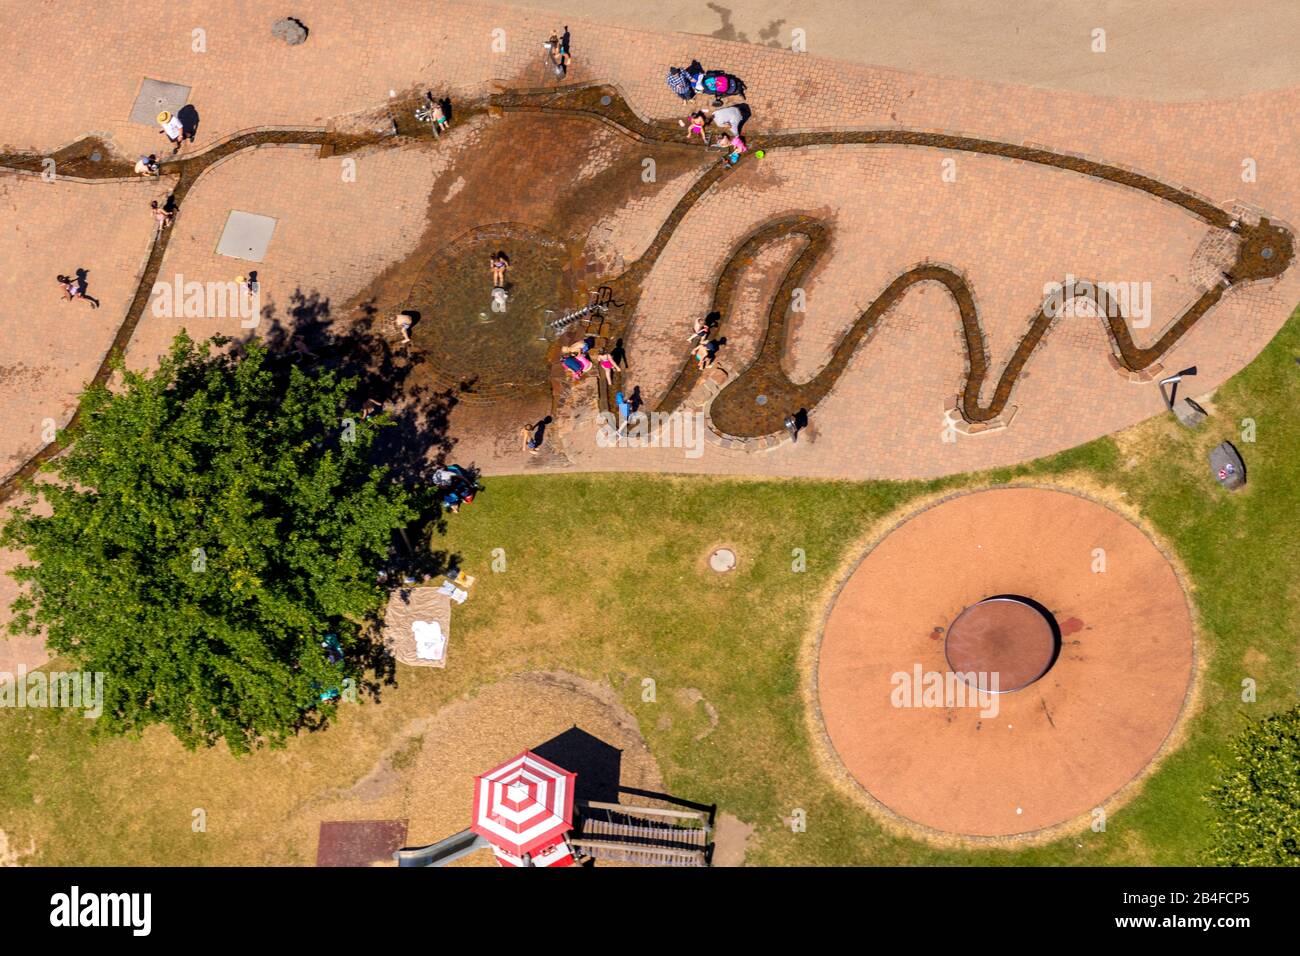 Luftbild zu Wasserspielen für Kinder im Herminghauspark in Velbert im Ruhrgebiet im Land Nordrhein-Westfalen in Deutschland. Stockfoto